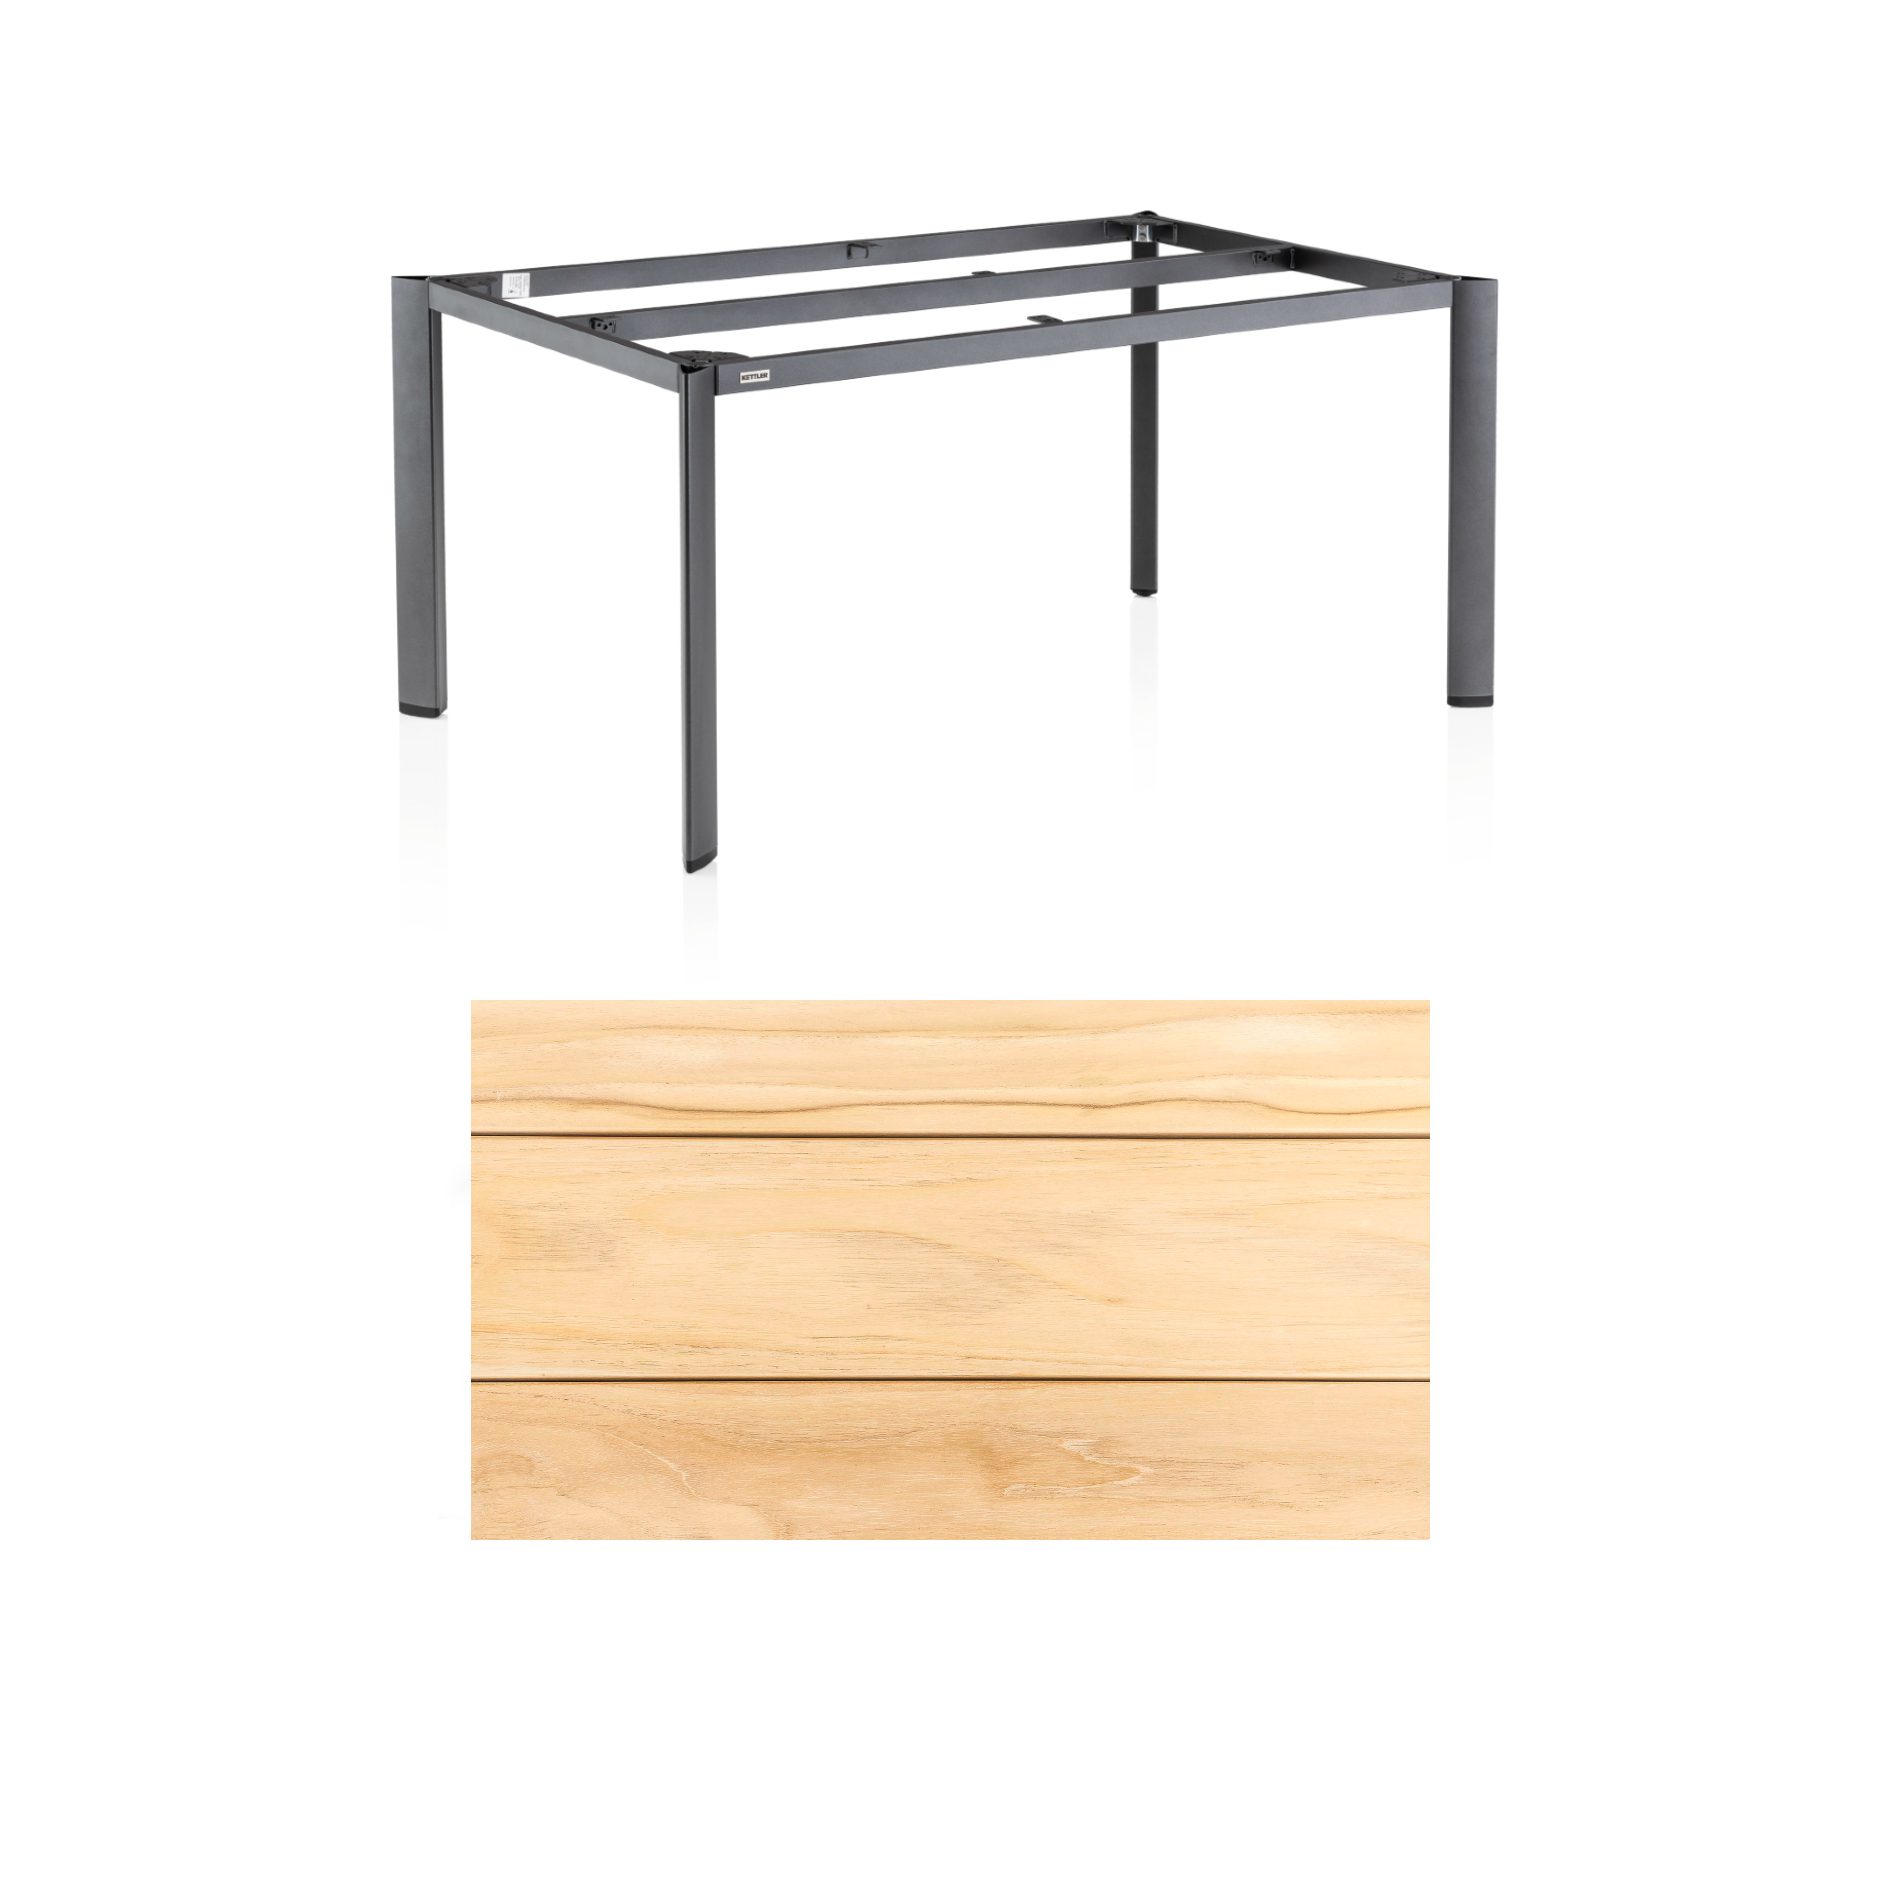 Kettler "Edge" Gartentisch, Tischgestell 180x95cm, Alu anthrazit, mit Tischplatte Teak